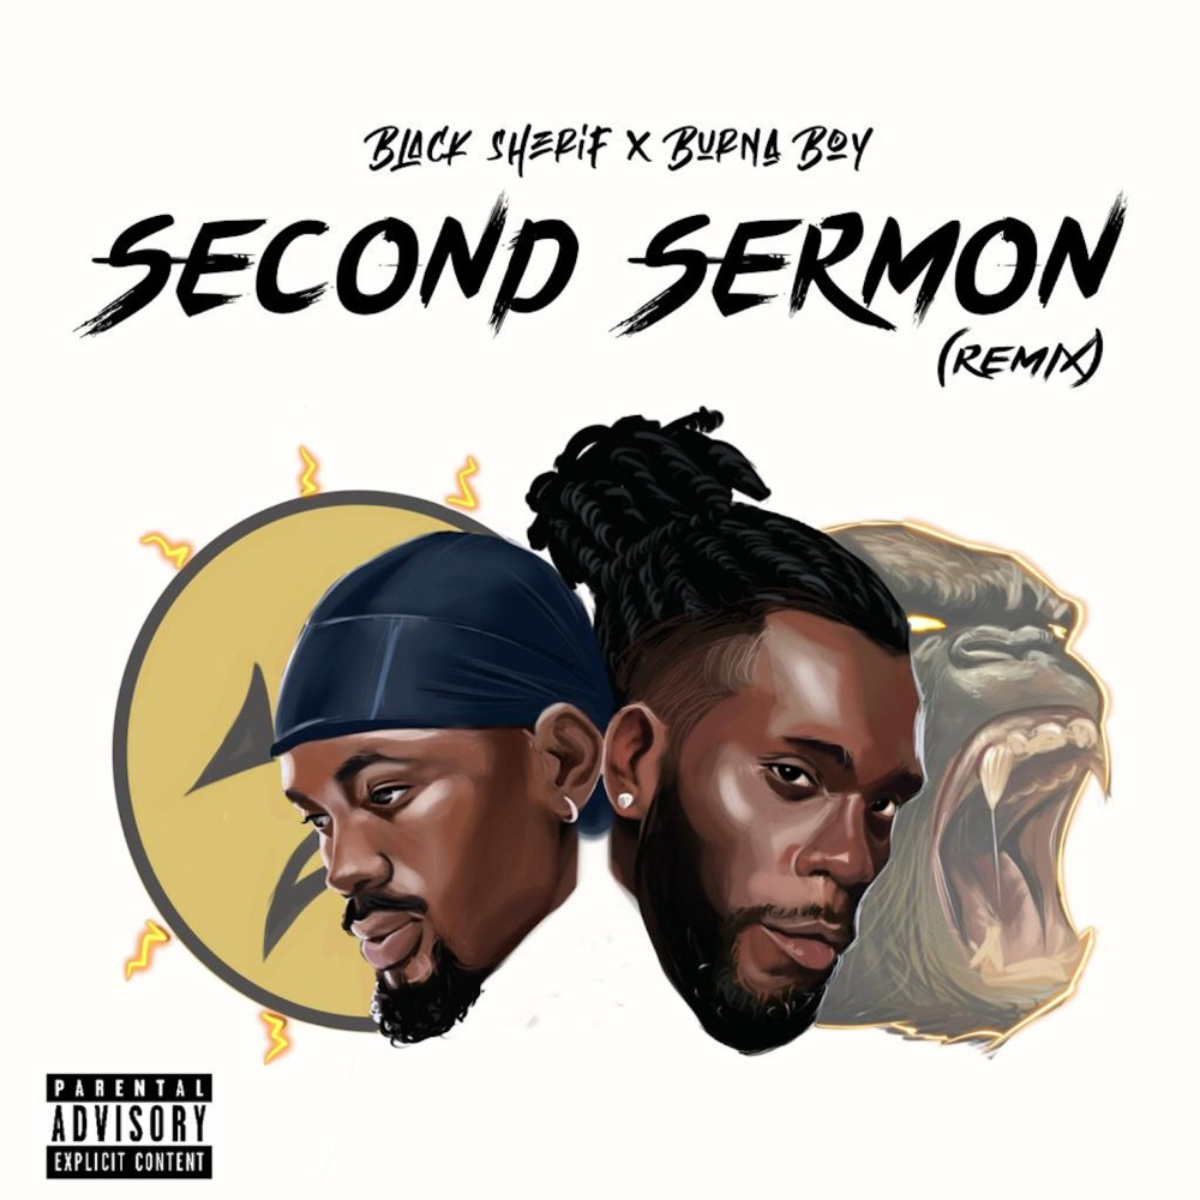 Second Sermon (Remix) by Black Sherif feat. Burna Boy